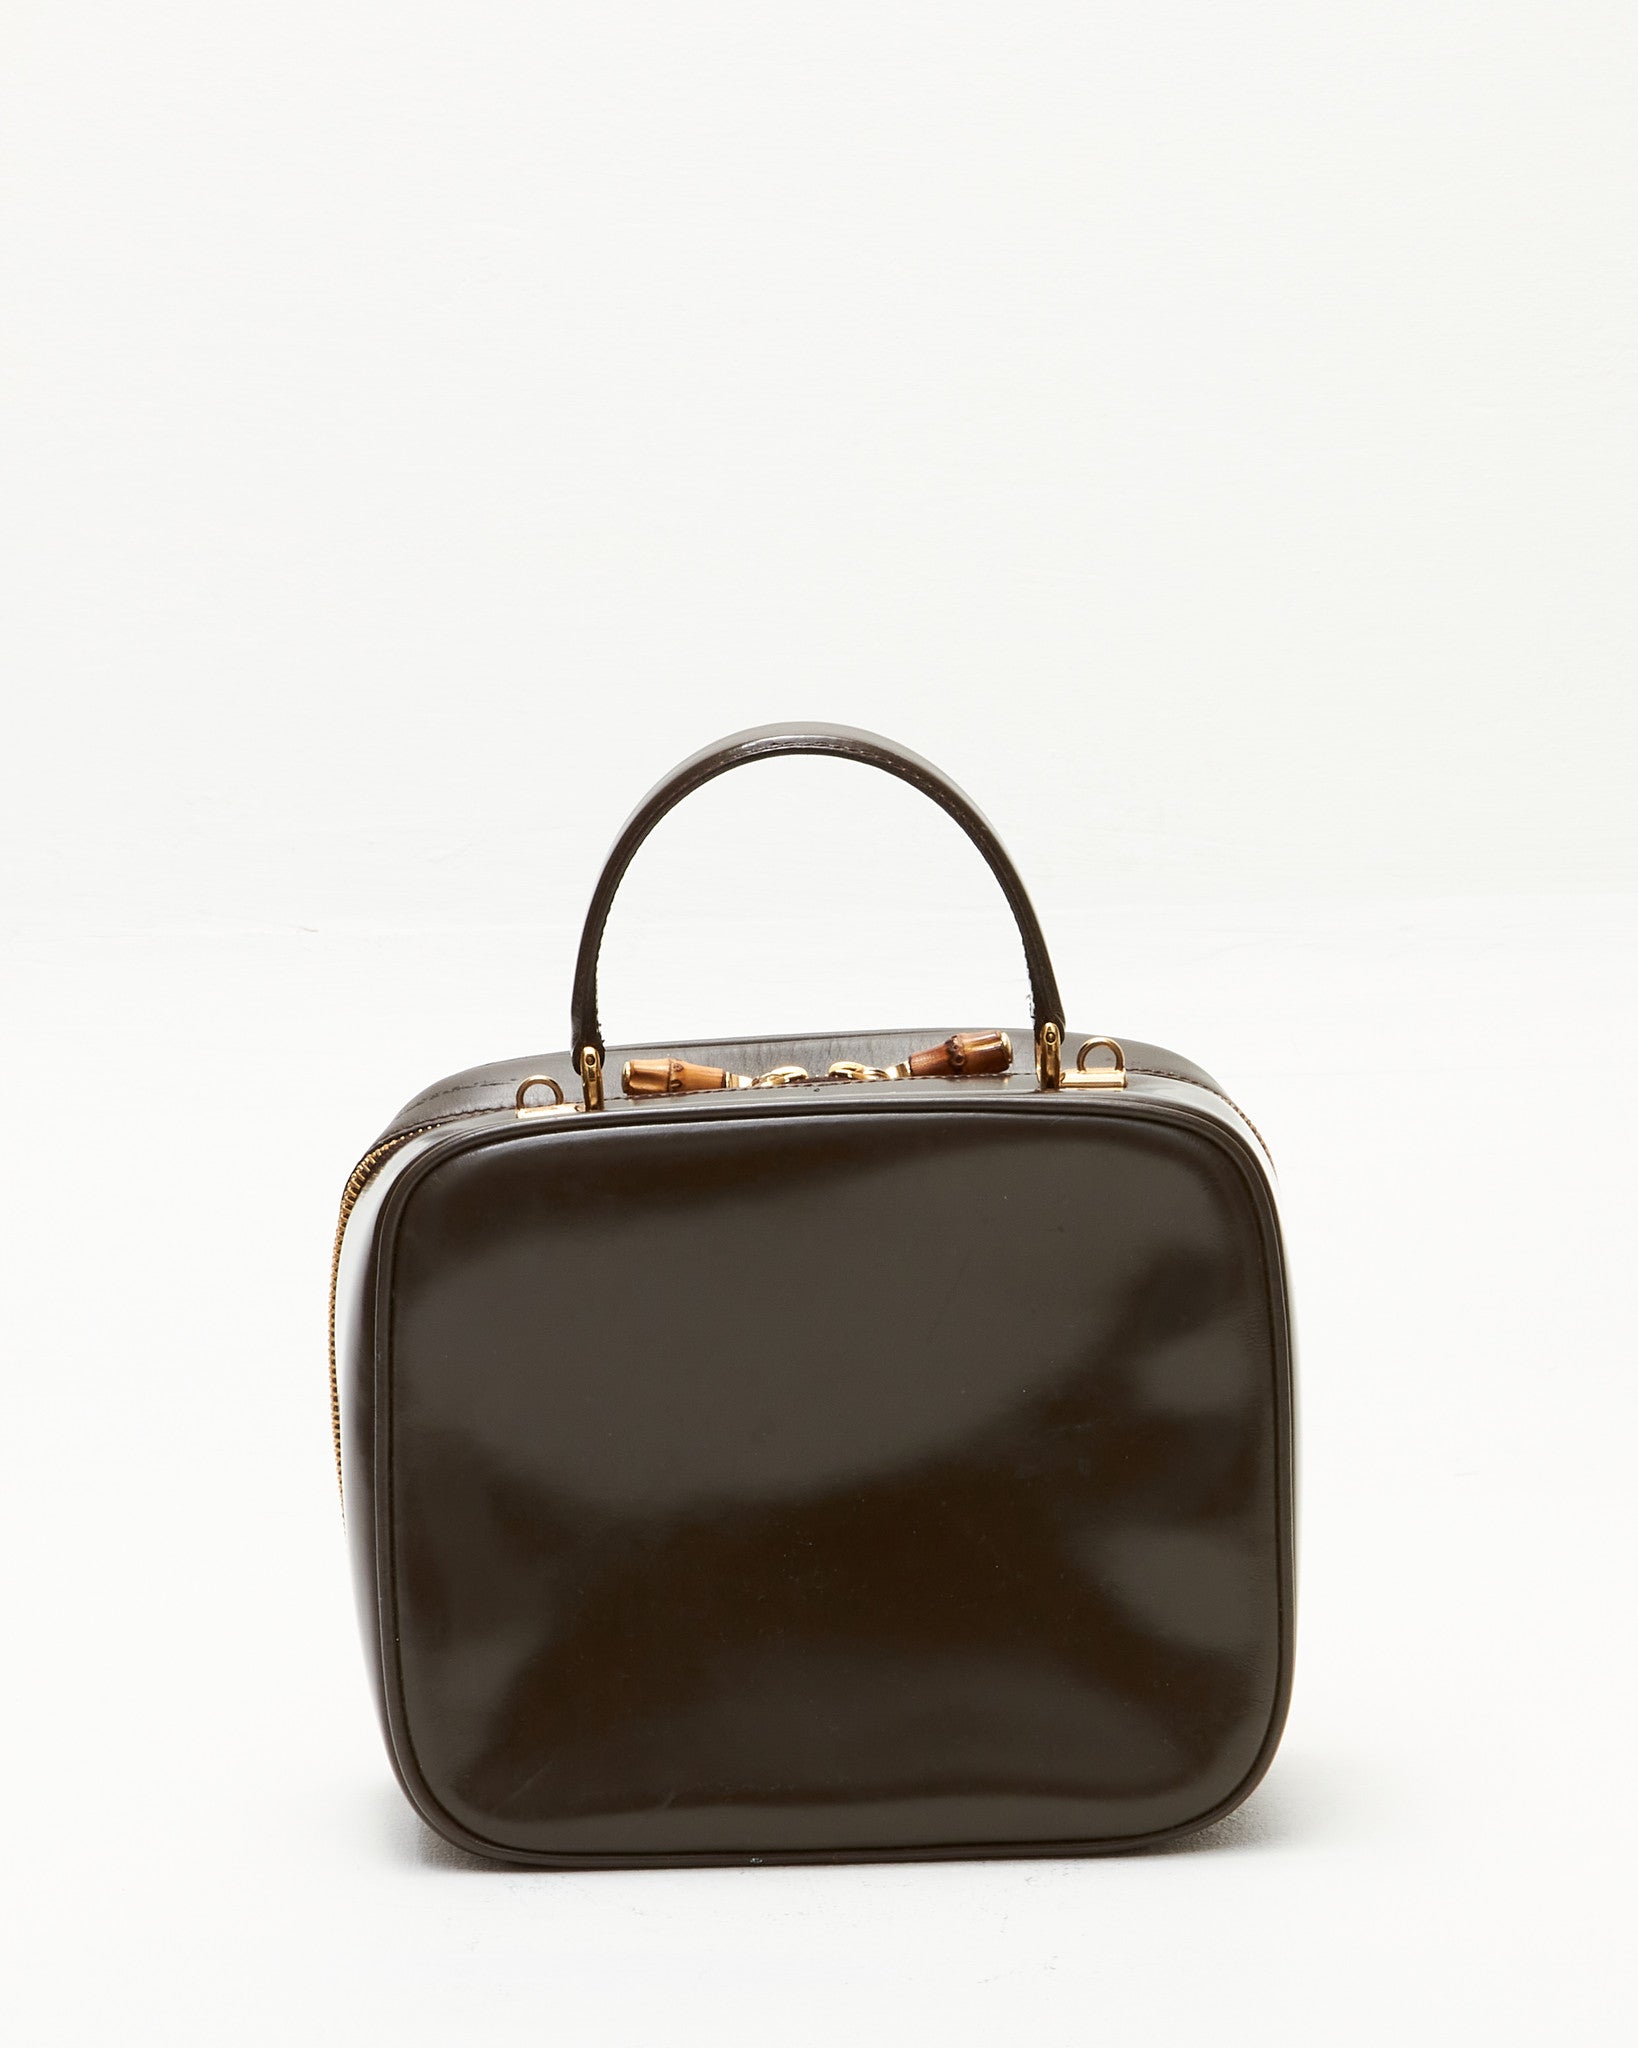 Gucci Vintage Brown Leather Vanity Top Handle Bag